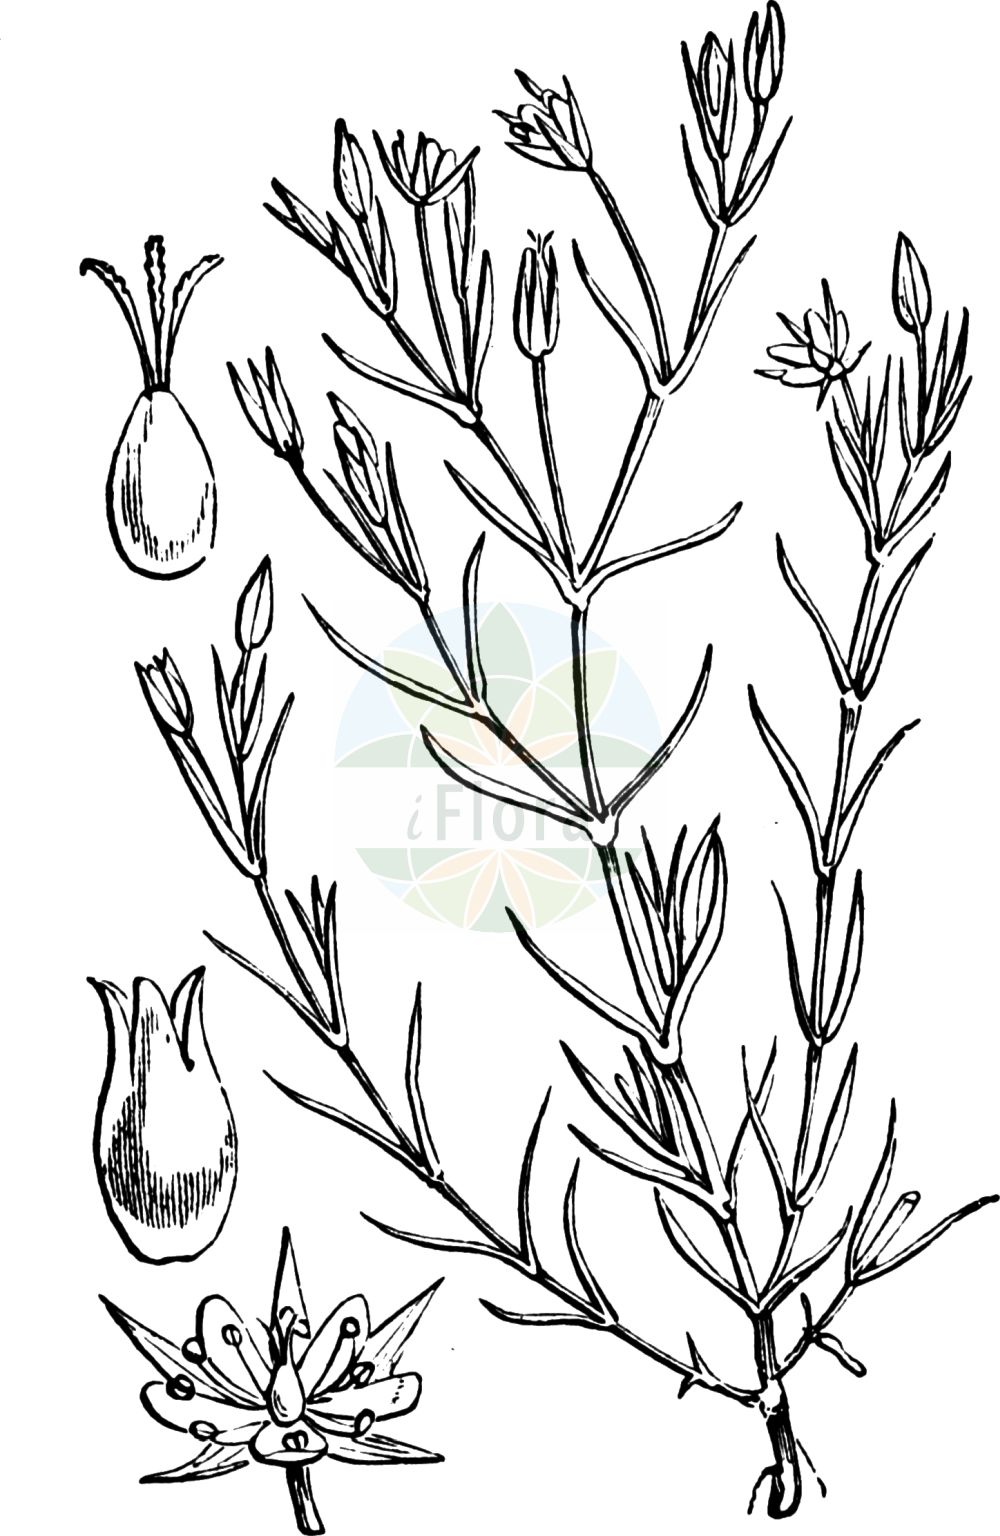 Historische Abbildung von Minuartia hybrida (Feinblättrige Miere - Fine-leaved Sandwort). Das Bild zeigt Blatt, Bluete, Frucht und Same. ---- Historical Drawing of Minuartia hybrida (Feinblättrige Miere - Fine-leaved Sandwort). The image is showing leaf, flower, fruit and seed.(Minuartia hybrida,Feinblättrige Miere,Fine-leaved Sandwort,Alsine hybrida,Alsine laxa,Alsine subulifolia,Alsine tenuifolia,Alsine tenuifolia (L.) Crantz,Arenaria hybrida,Arenaria tenuifolia,Arenaria viscidula,Minuartia birjuczensis,Minuartia hybrida,Minuartia hypanica,Minuartia pseudohybrida,Minuartia tenuifolia,Minuartia tenuifolia subsp. vaillantiana,Feinblaettrige Miere,Feinblatt-Miere,Zart-Miere,Fine-leaved Sandwort,Slender-leaf Sandwort,Minuartia,Miere,Stitchwort,Caryophyllaceae,Nelkengewächse,Pink family,Blatt,Bluete,Frucht,Same,leaf,flower,fruit,seed,Fitch et al. (1880))